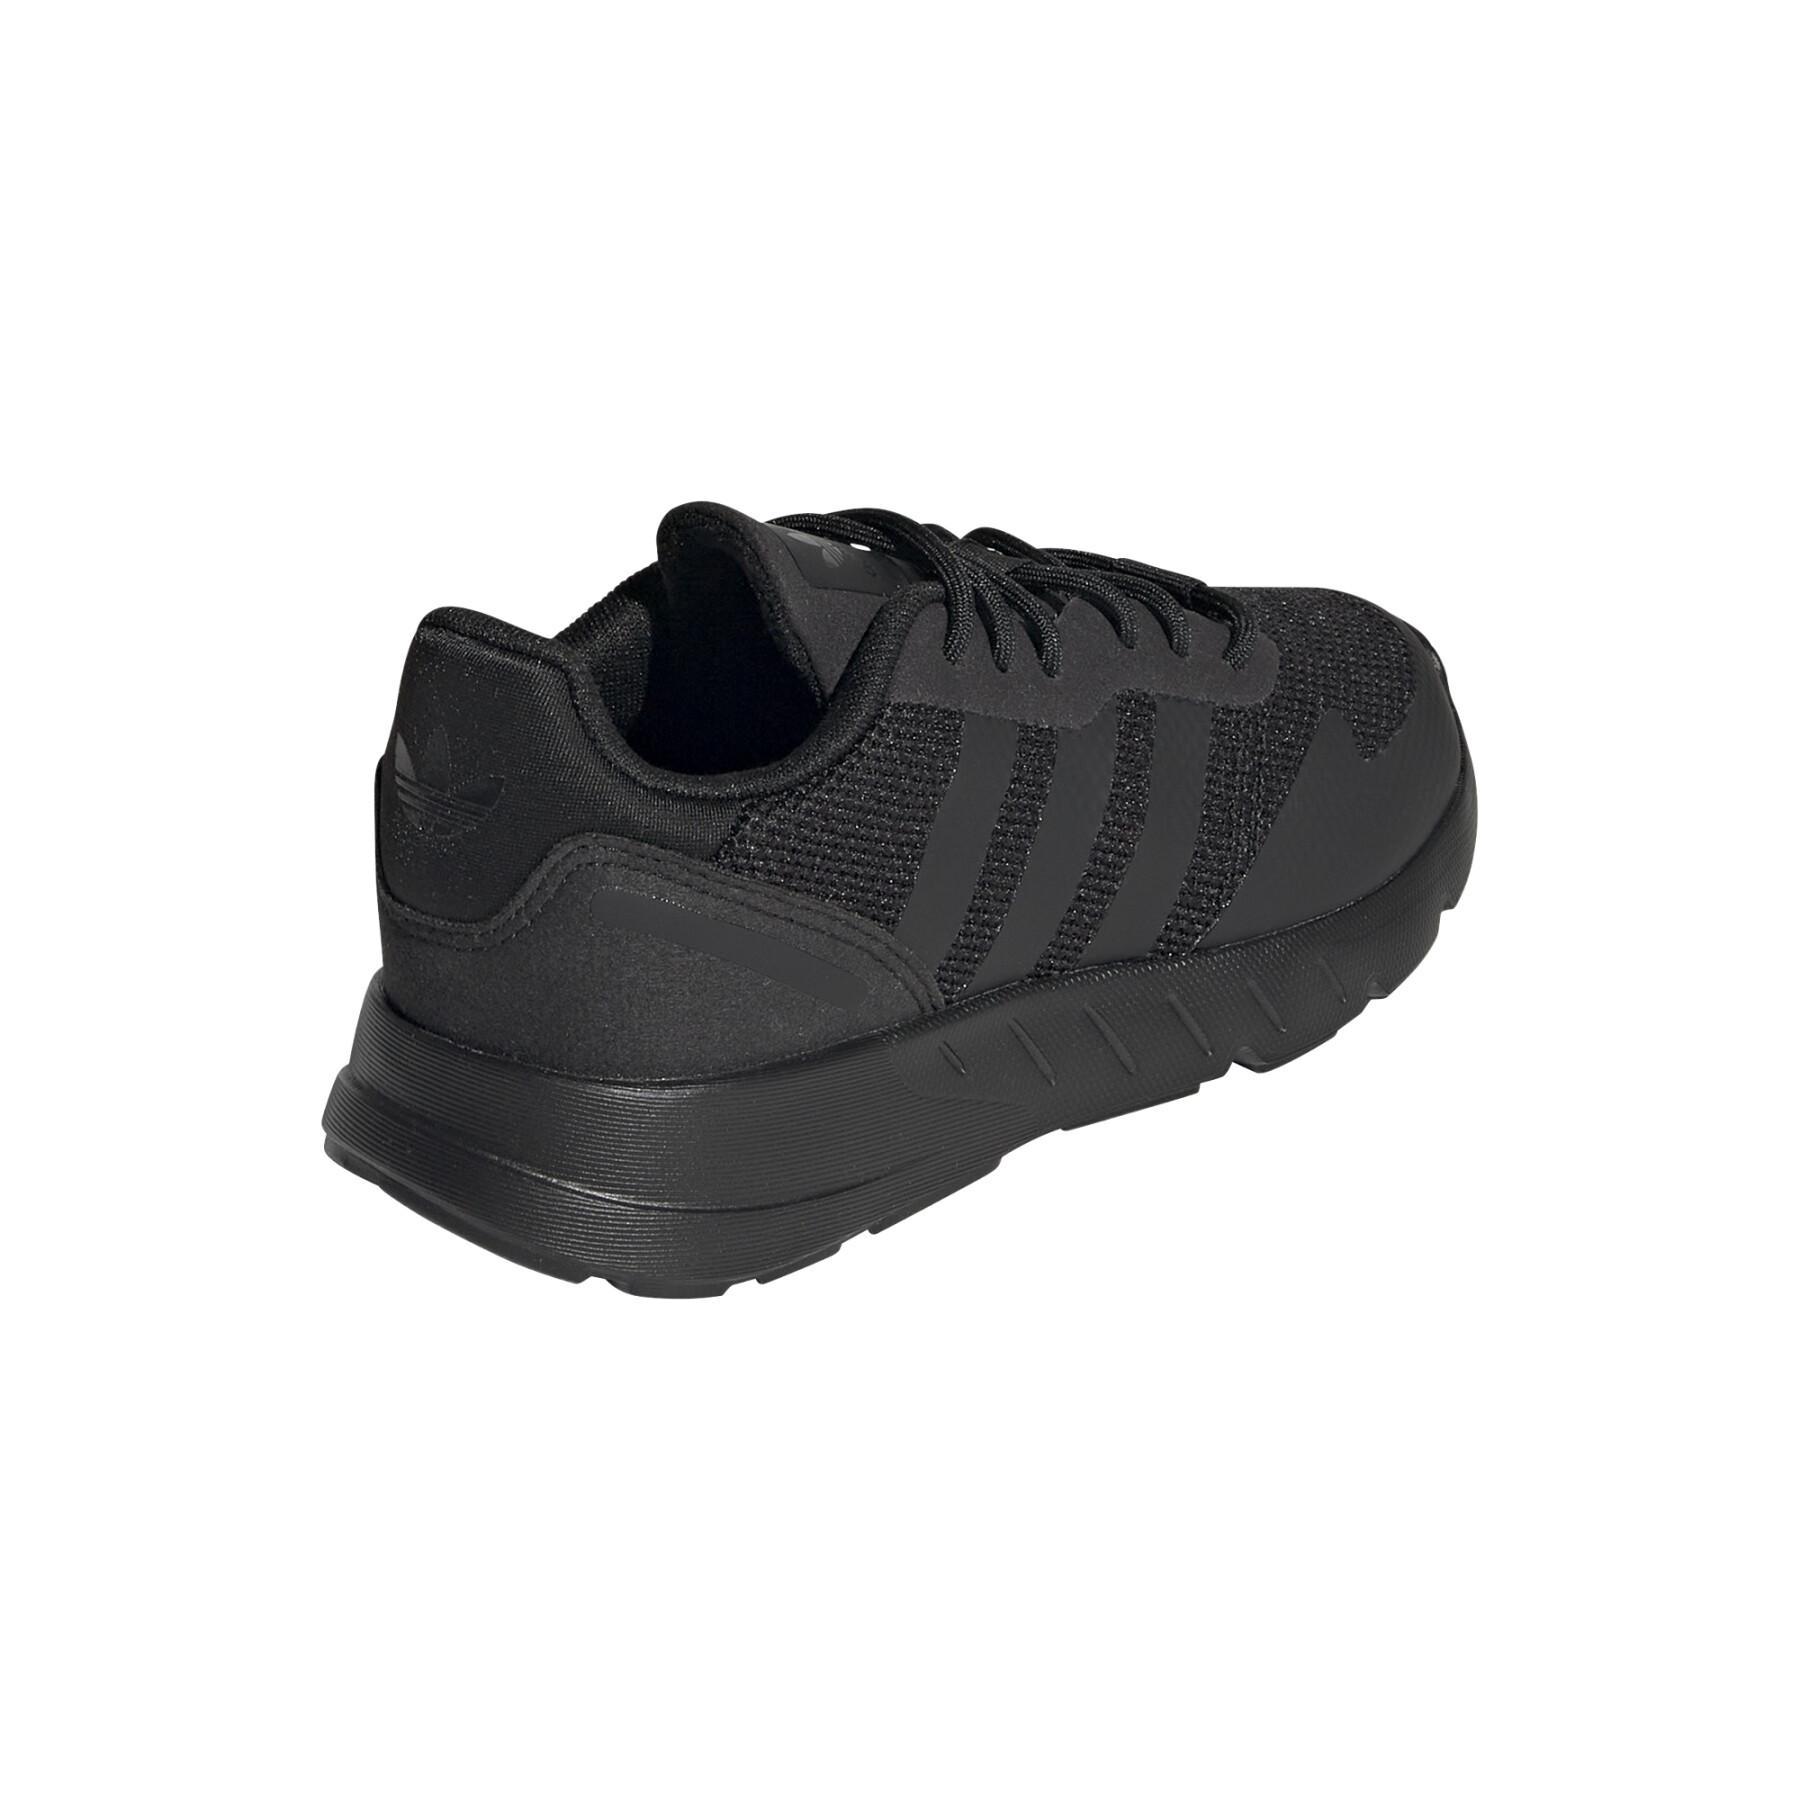 Children's sneakers adidas Originals ZX 1K